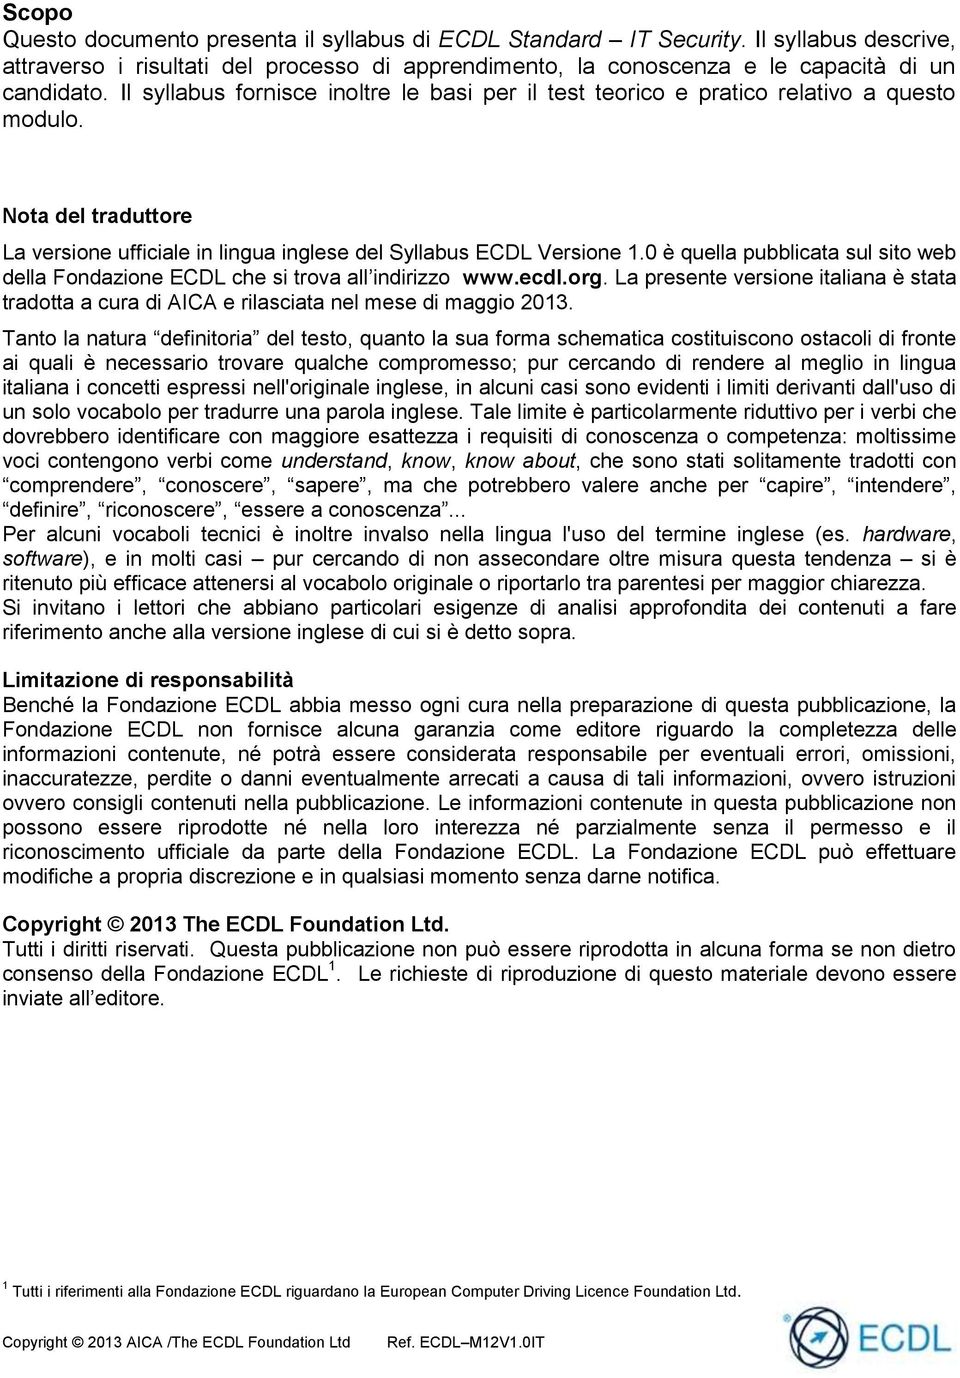 0 è quella pubblicata sul sito web della Fondazione ECDL che si trova all indirizzo www.ecdl.org. La presente versione italiana è stata tradotta a cura di AICA e rilasciata nel mese di maggio 2013.